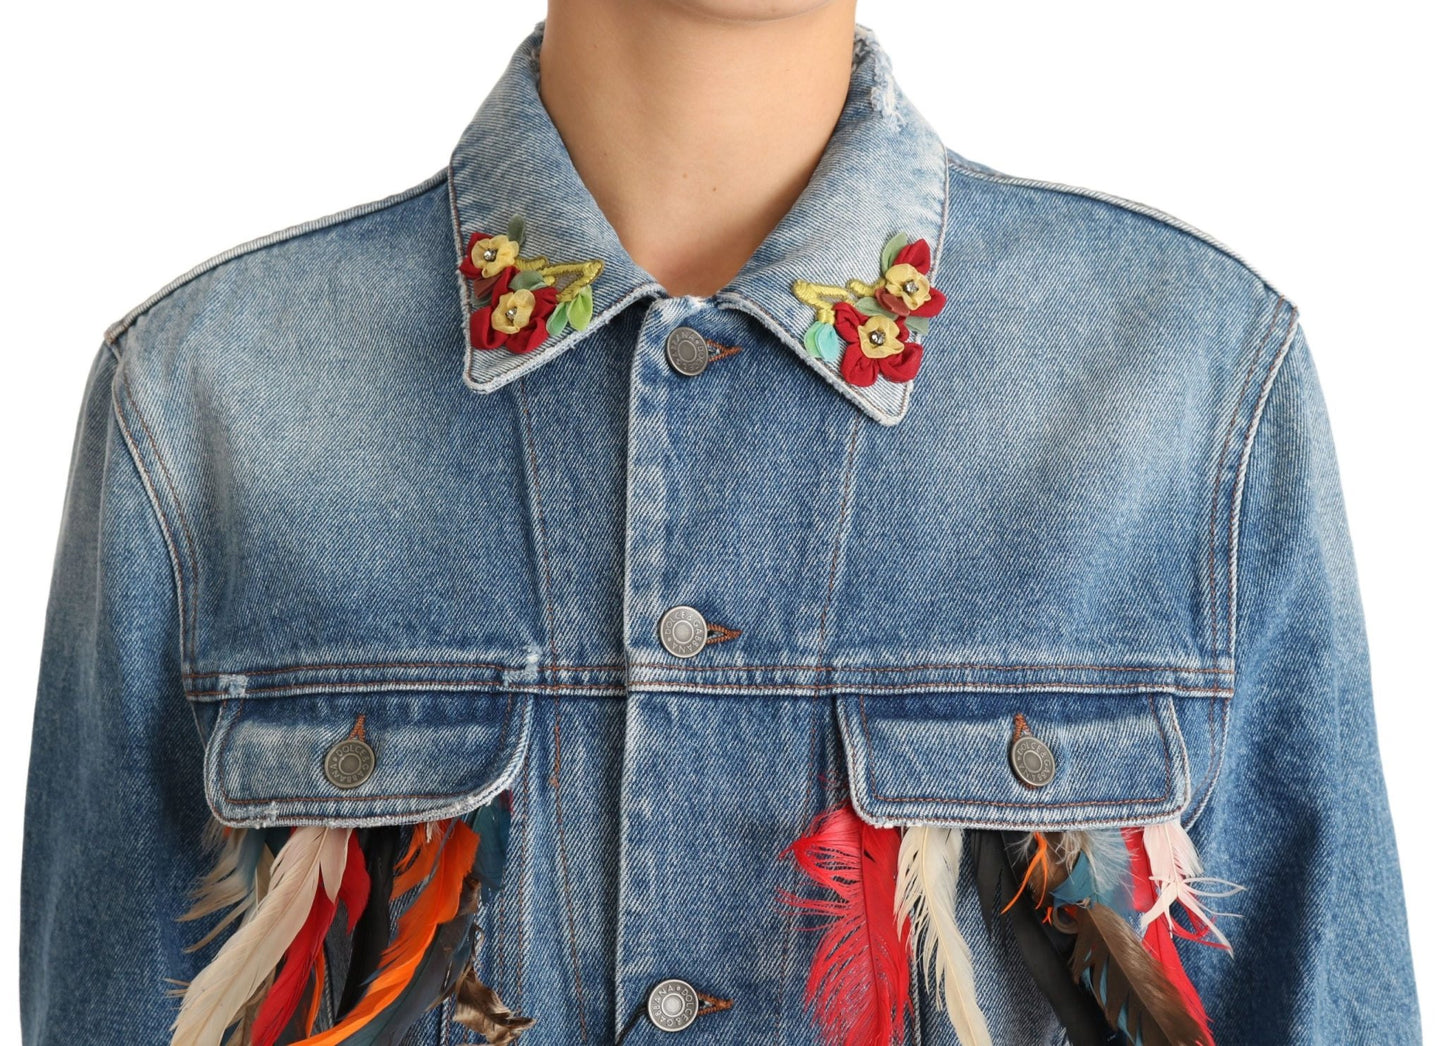 Dolce & Gabbana Floral Embroidered Denim Elegance Jacket